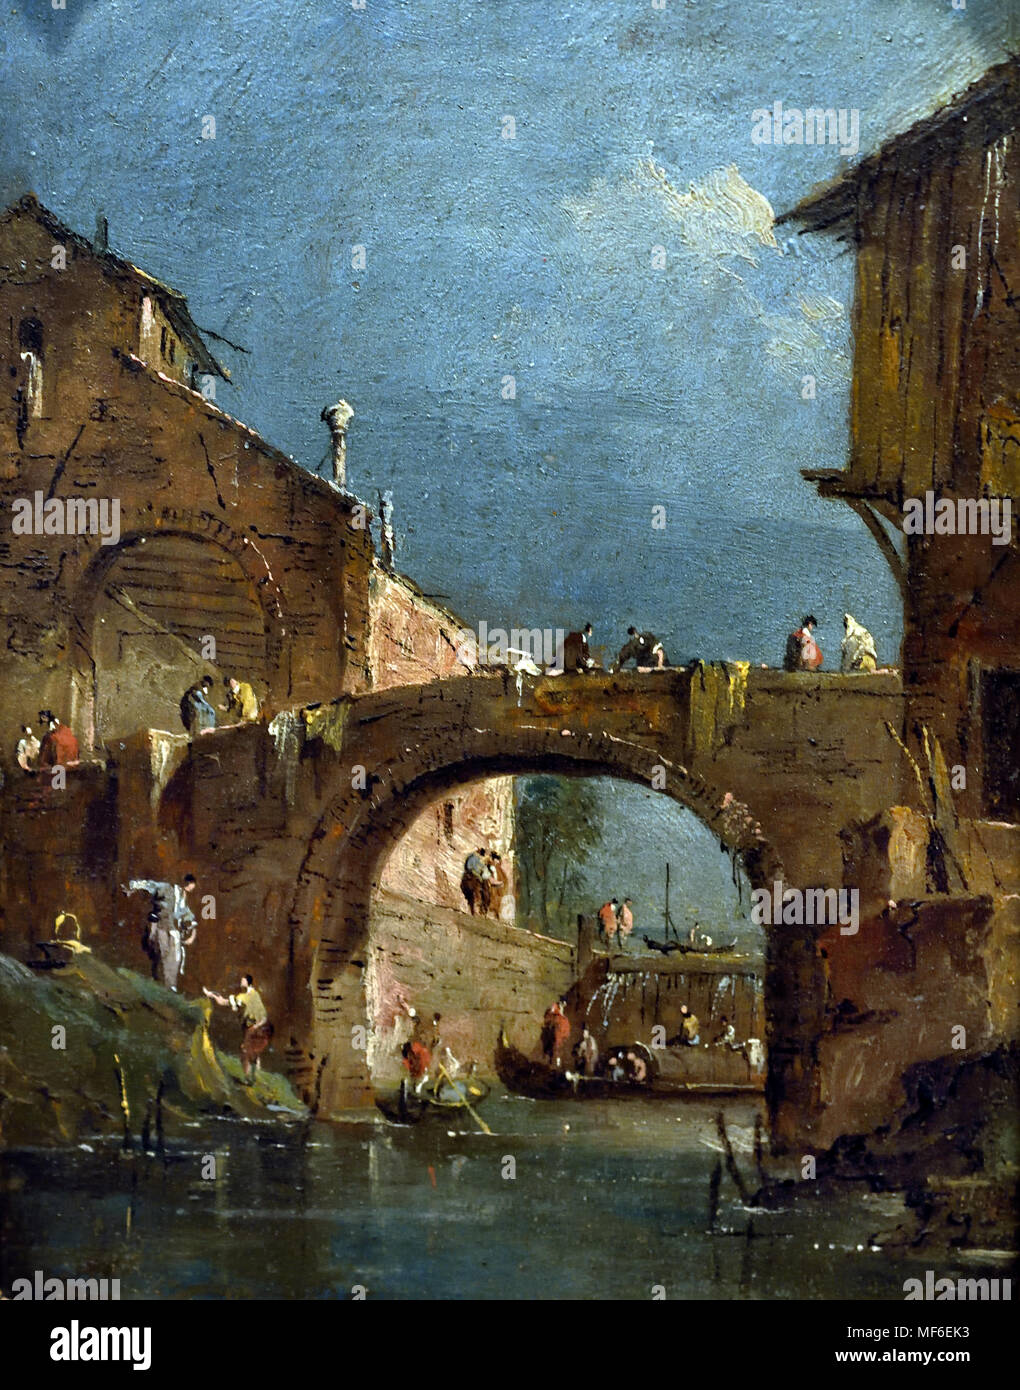 El puente sobre las compuertas en Dolo 1770 Francesco Guardi Lazzaro 1712 - 1793 pintor italiano de veduta, noble, y un miembro de la escuela veneciana. Venecia Italia Foto de stock